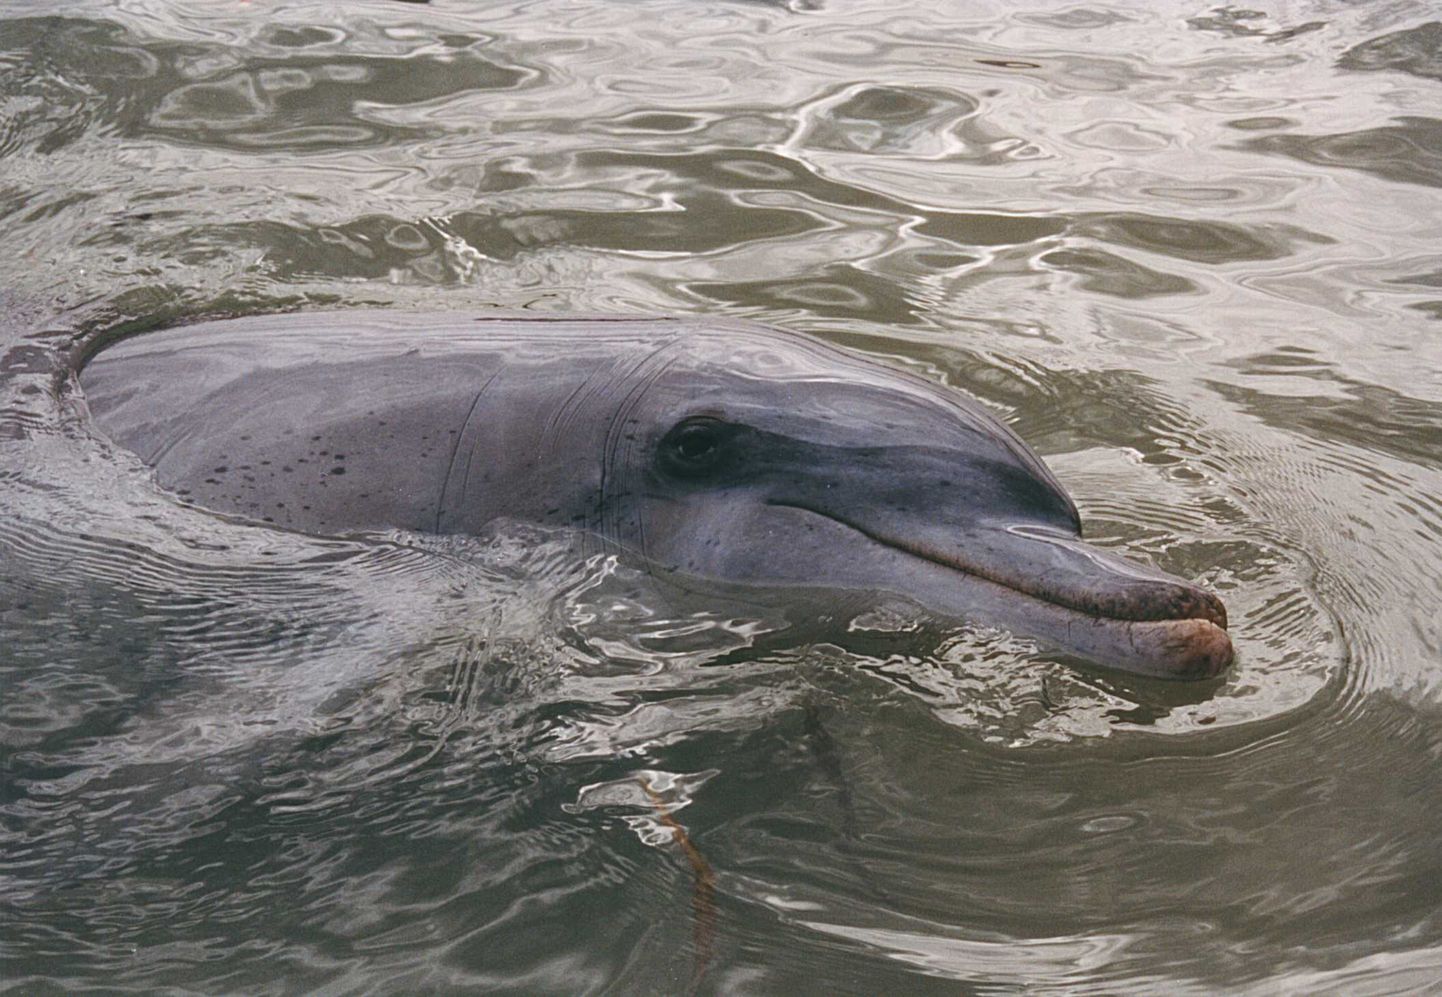 Laiksilm-delfiini ehk afaliiniga Austraalia rannikul. Aravatavasti on sama liiki veeloom ka Jaapani rünnakute taga.